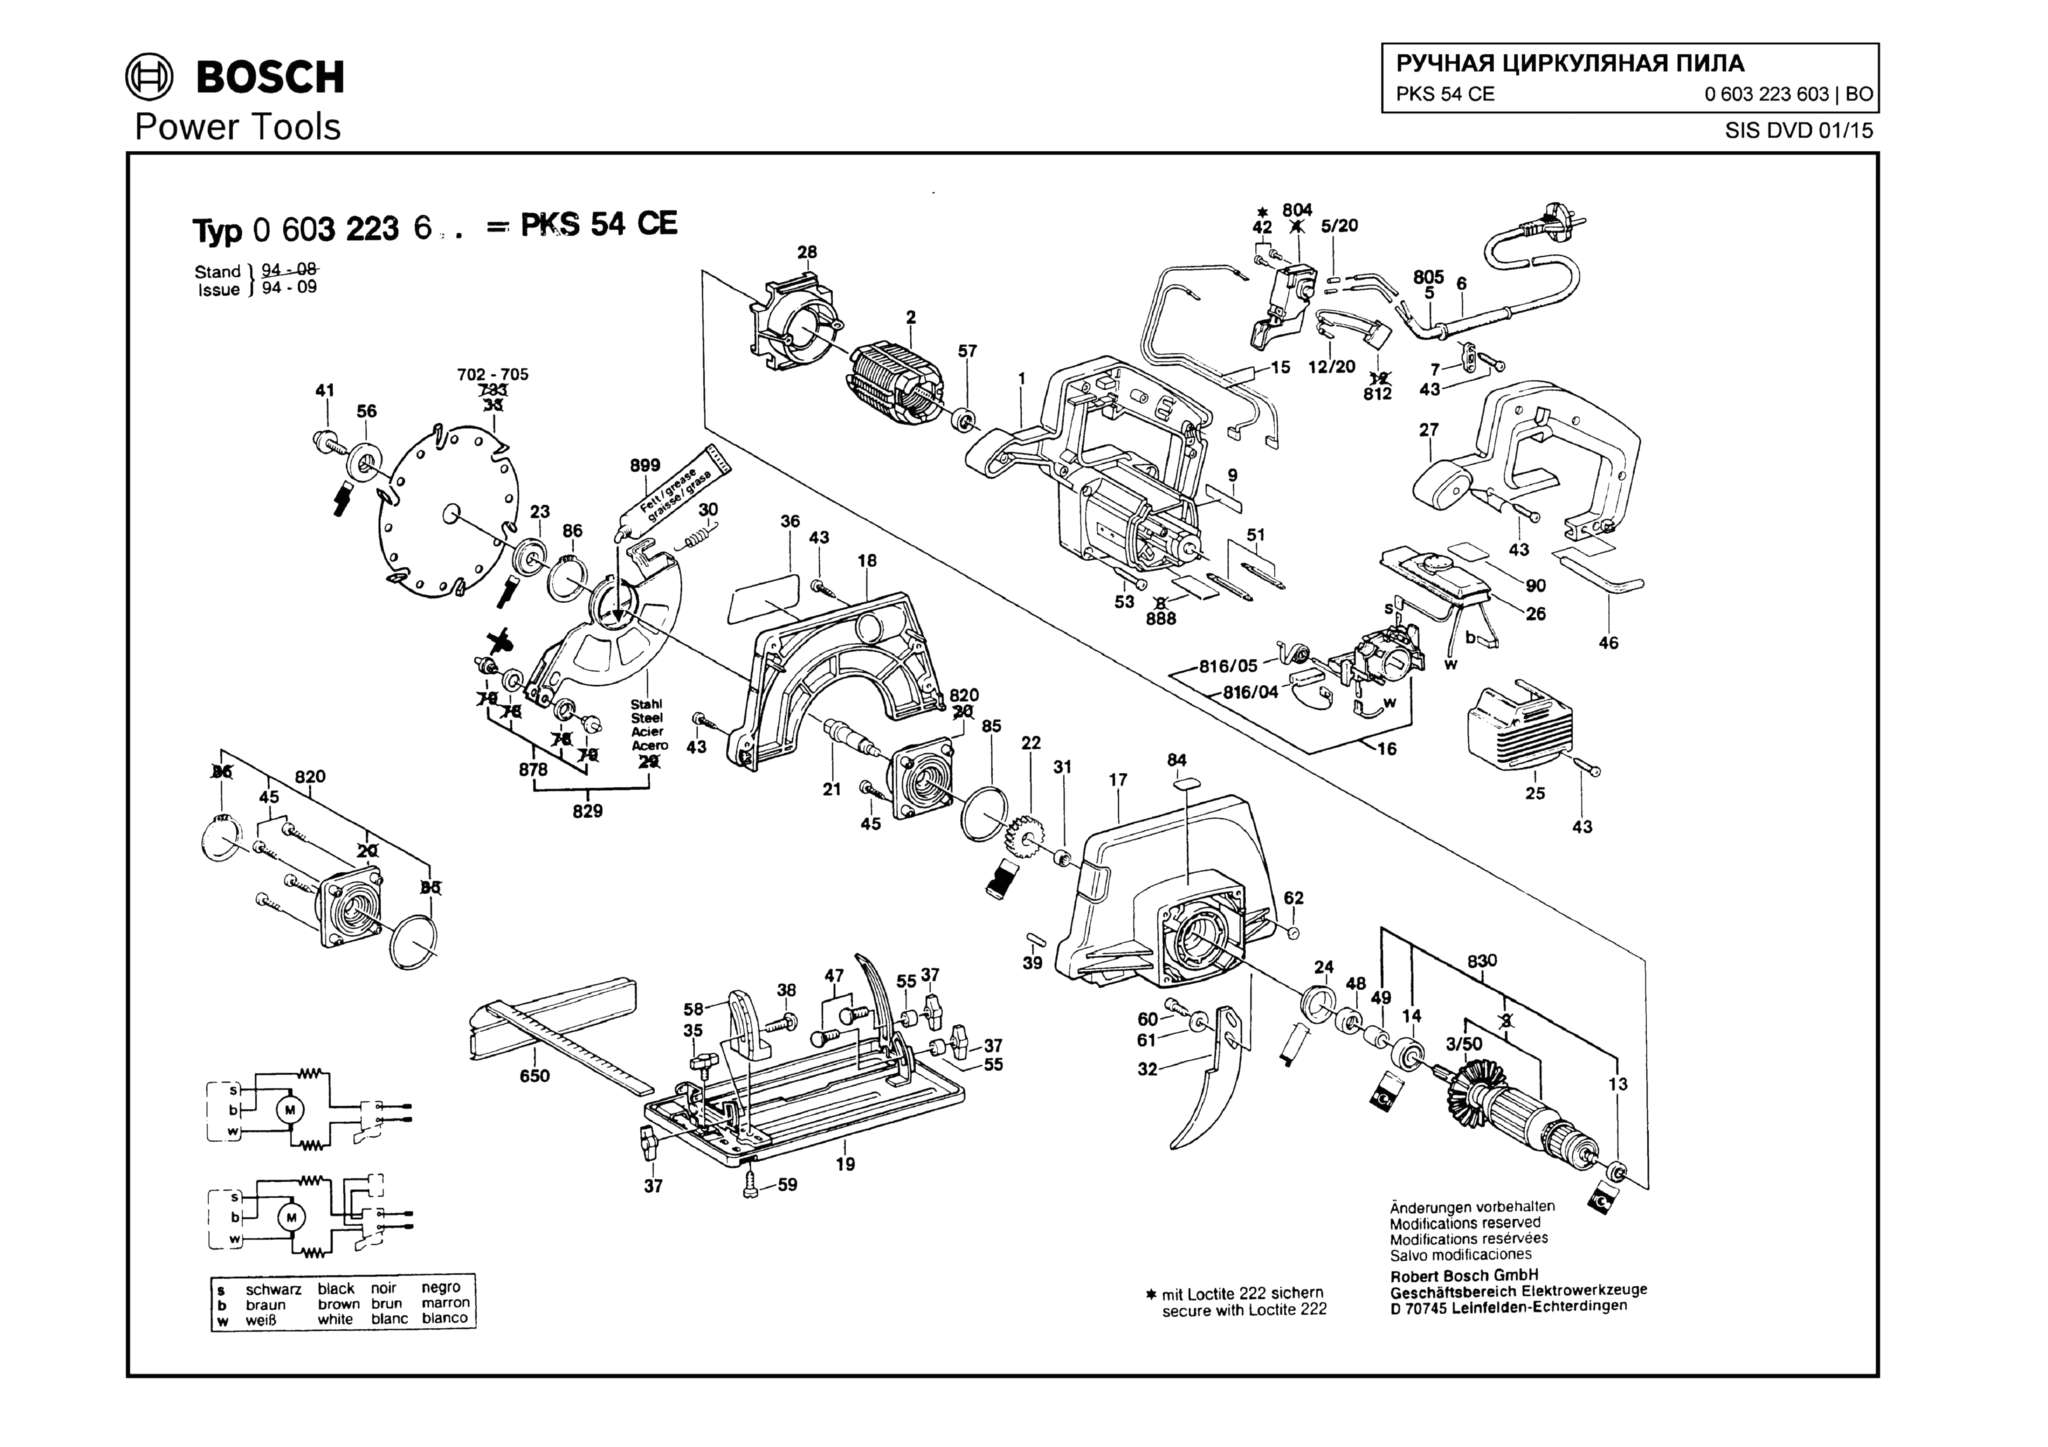 Запчасти, схема и деталировка Bosch PKS 54 CE (ТИП 0603223603)